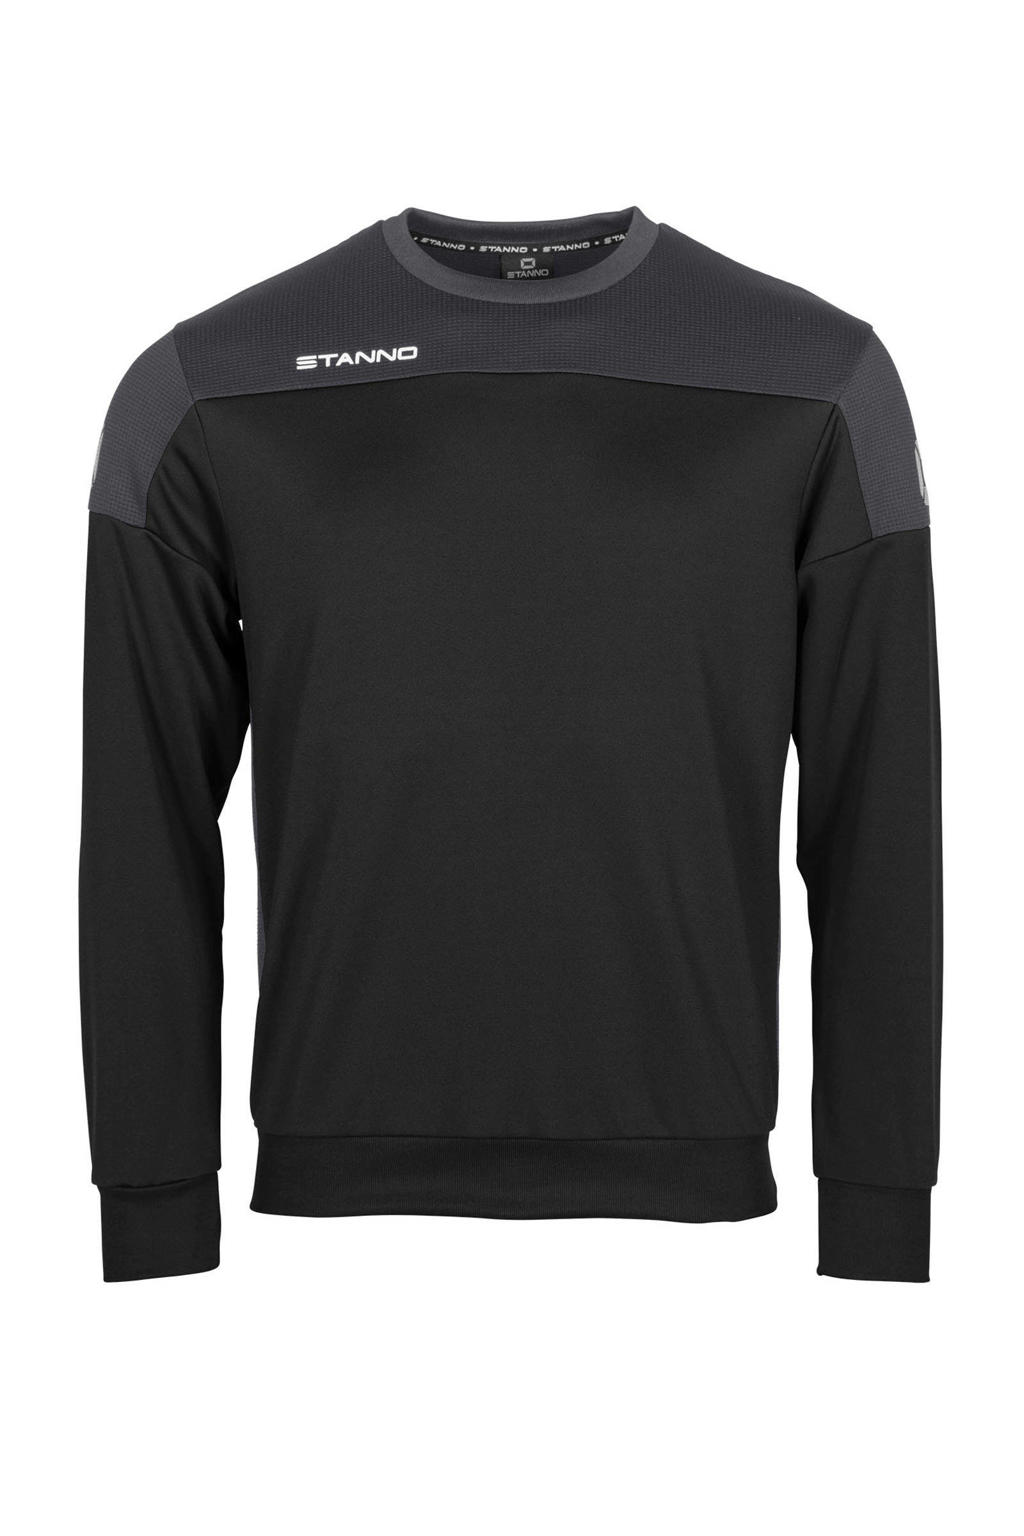 Zwart en antraciete heren Stanno voetbalsweater van polyester met lange mouwen en ronde hals